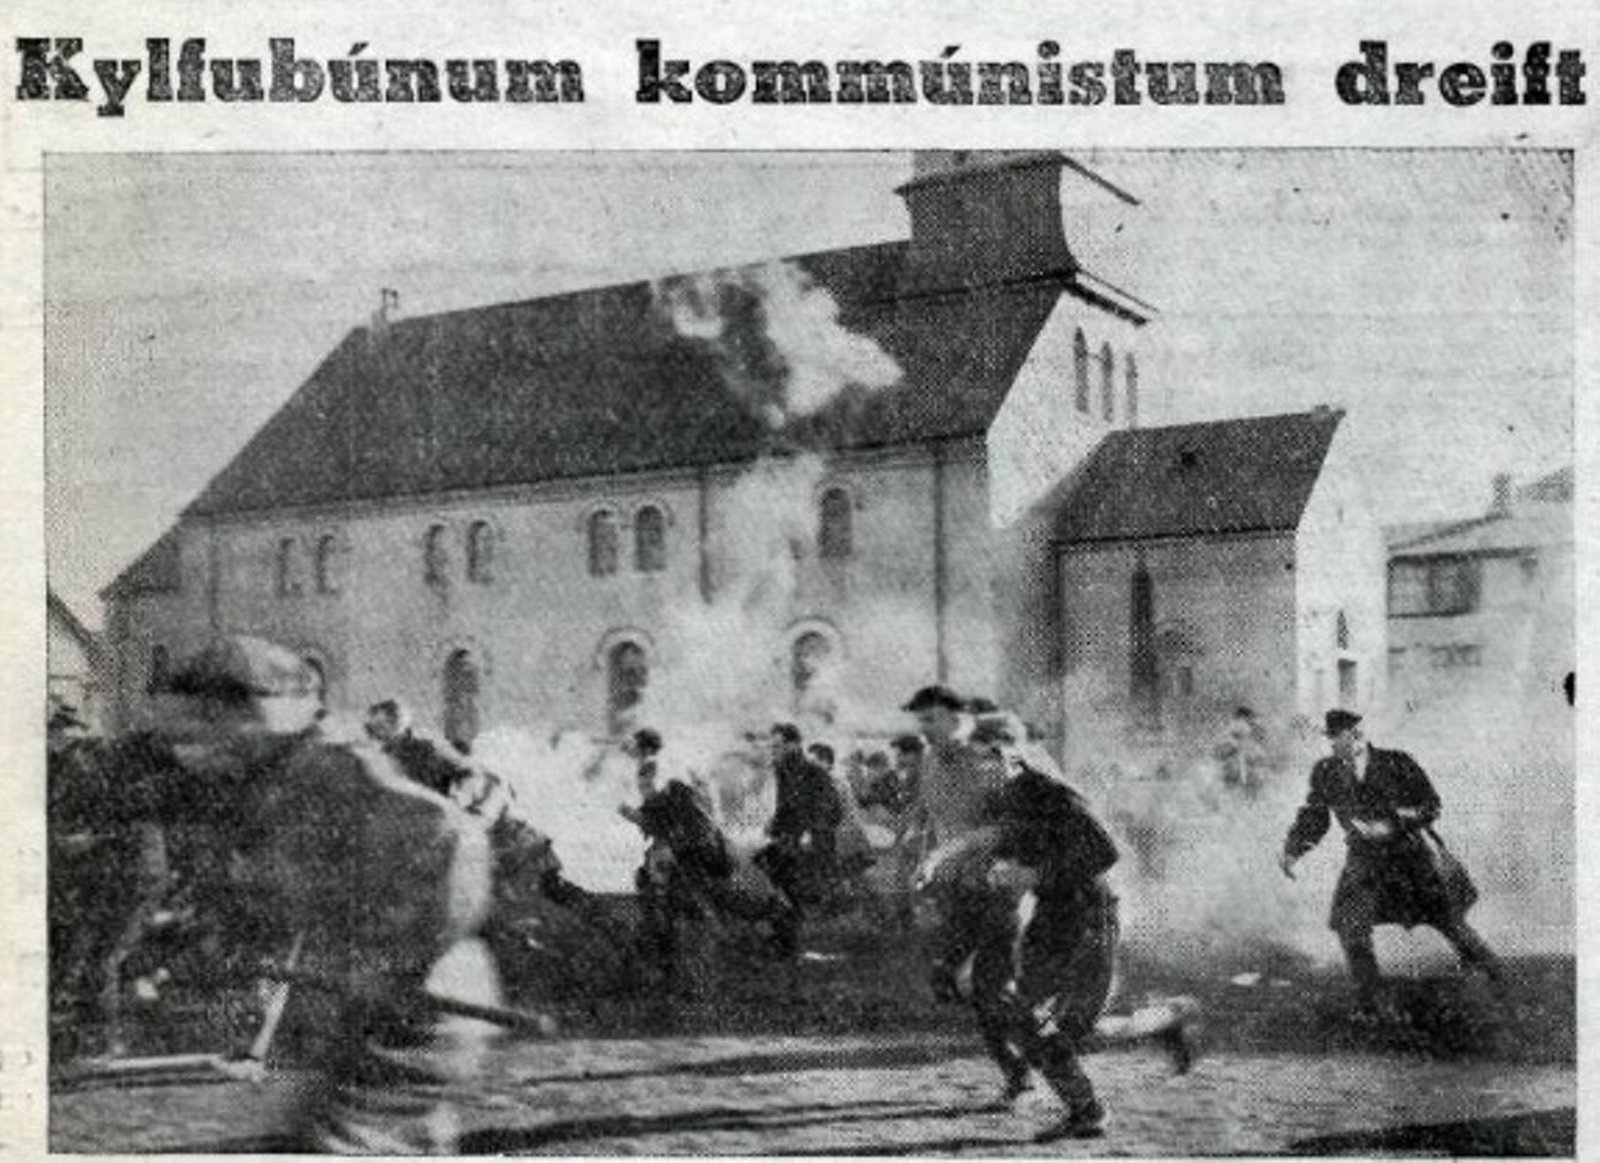 Mynd Morgunblasins af mtmlunum fyrir framan alingishsi 30. mars 1949